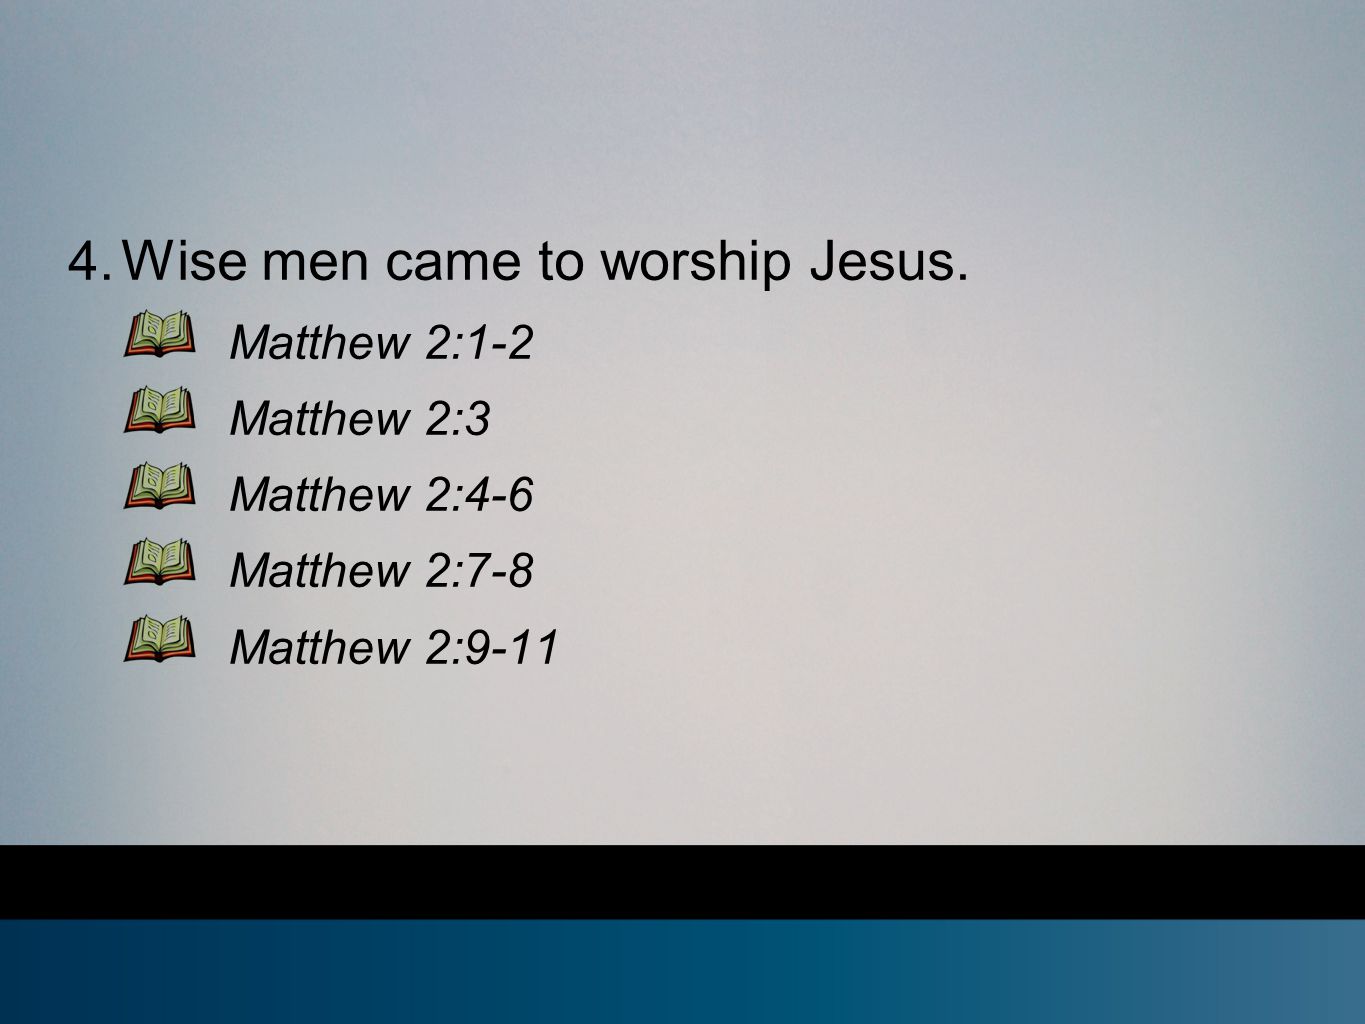 4. Wise men came to worship Jesus.